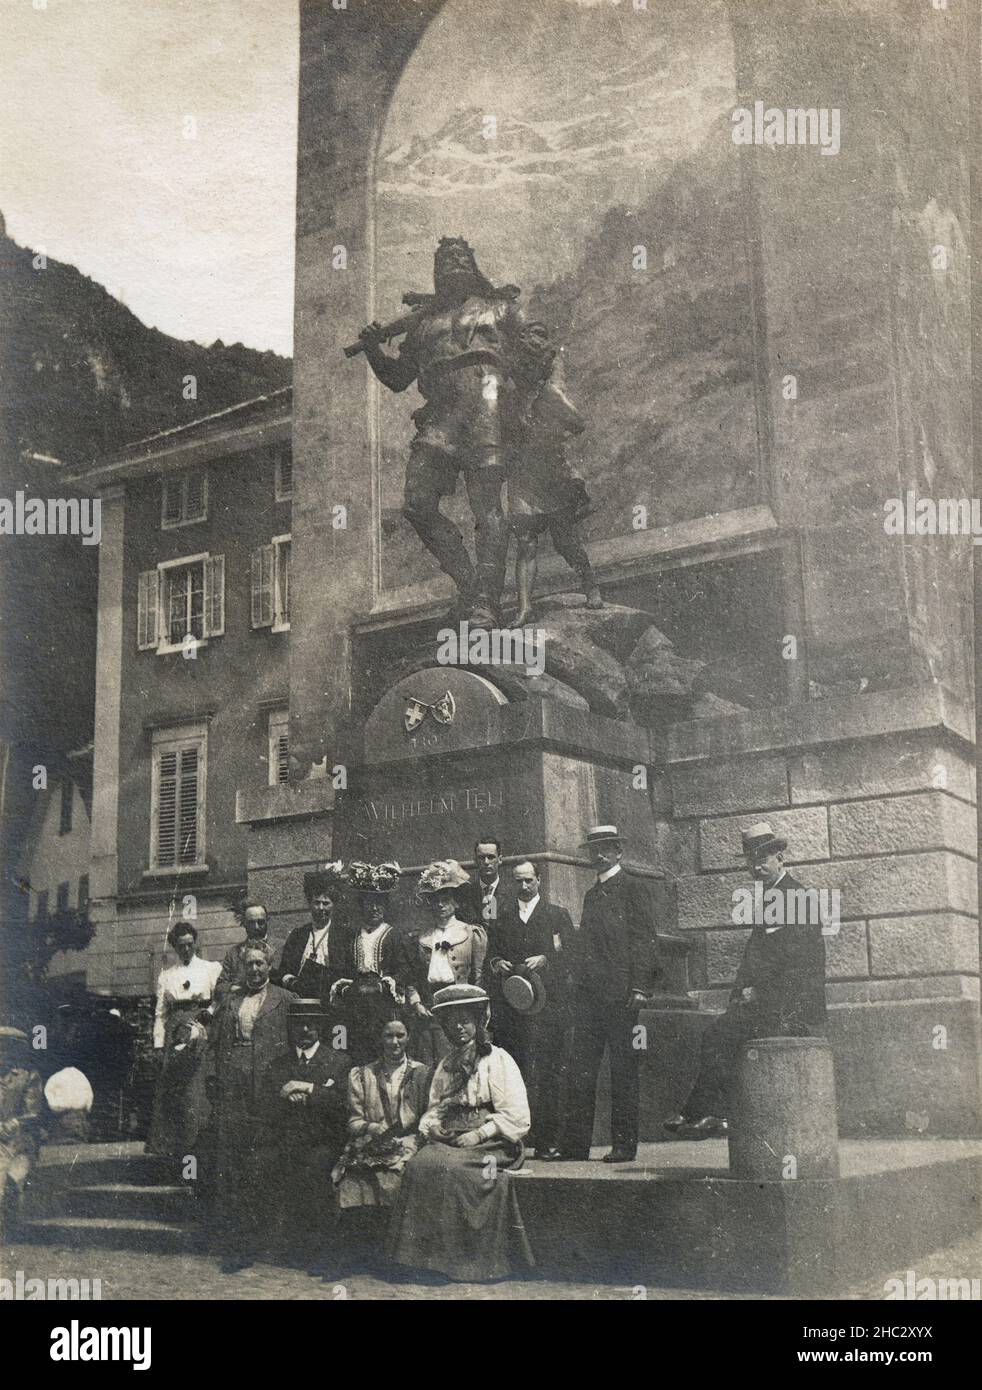 Fotografía antigua de c1900, Monumento del Contar en el mercado de Altdorf, Cantón de Uri, Suiza. FUENTE: IMPRESIÓN FOTOGRÁFICA ORIGINAL Foto de stock